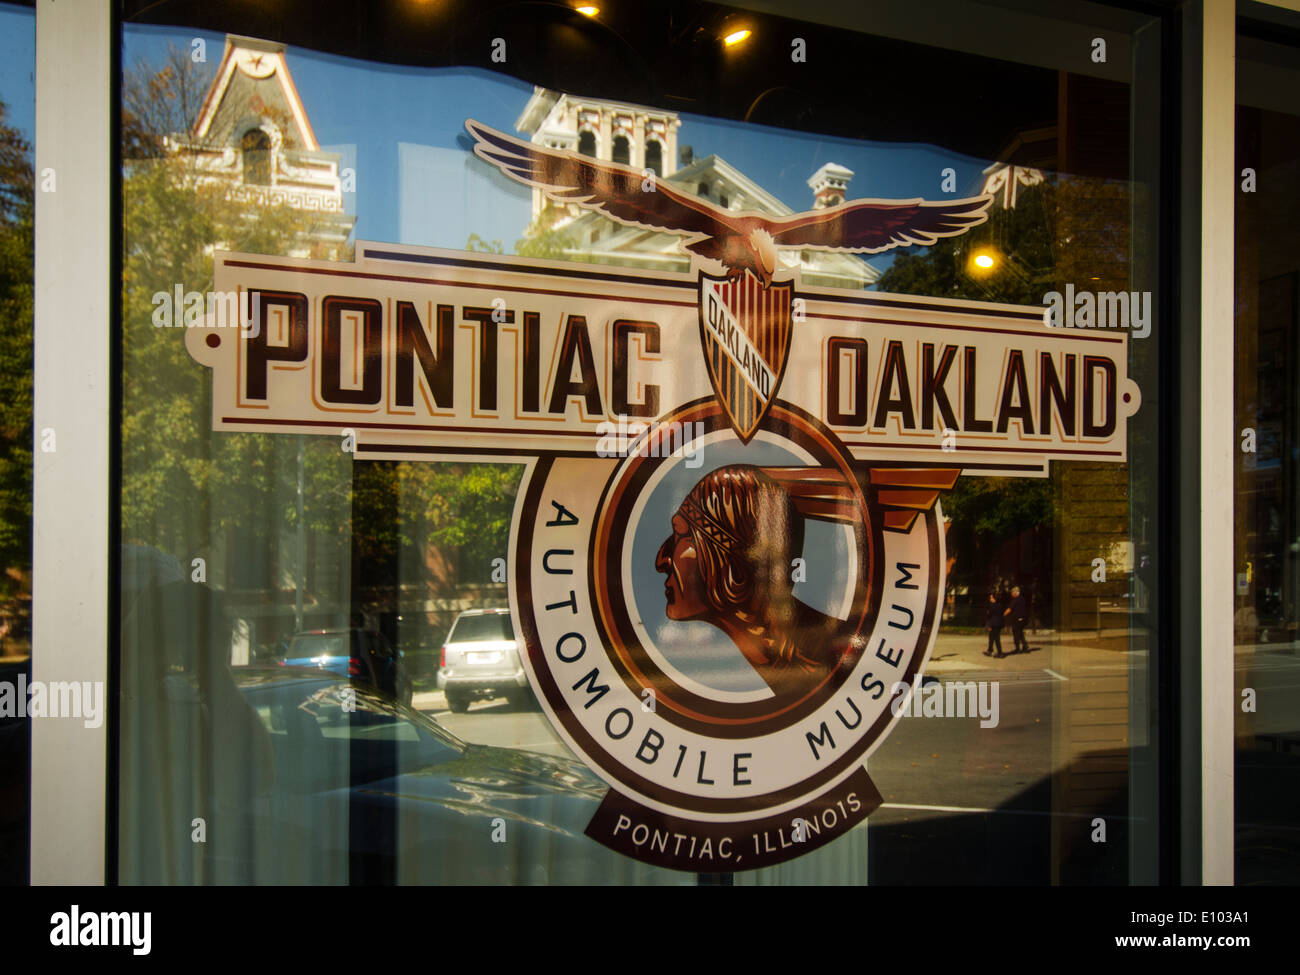 Le Pontiac-Oakland Museum de Pontiac, Illinois, une ville le long de la Route 66 Banque D'Images